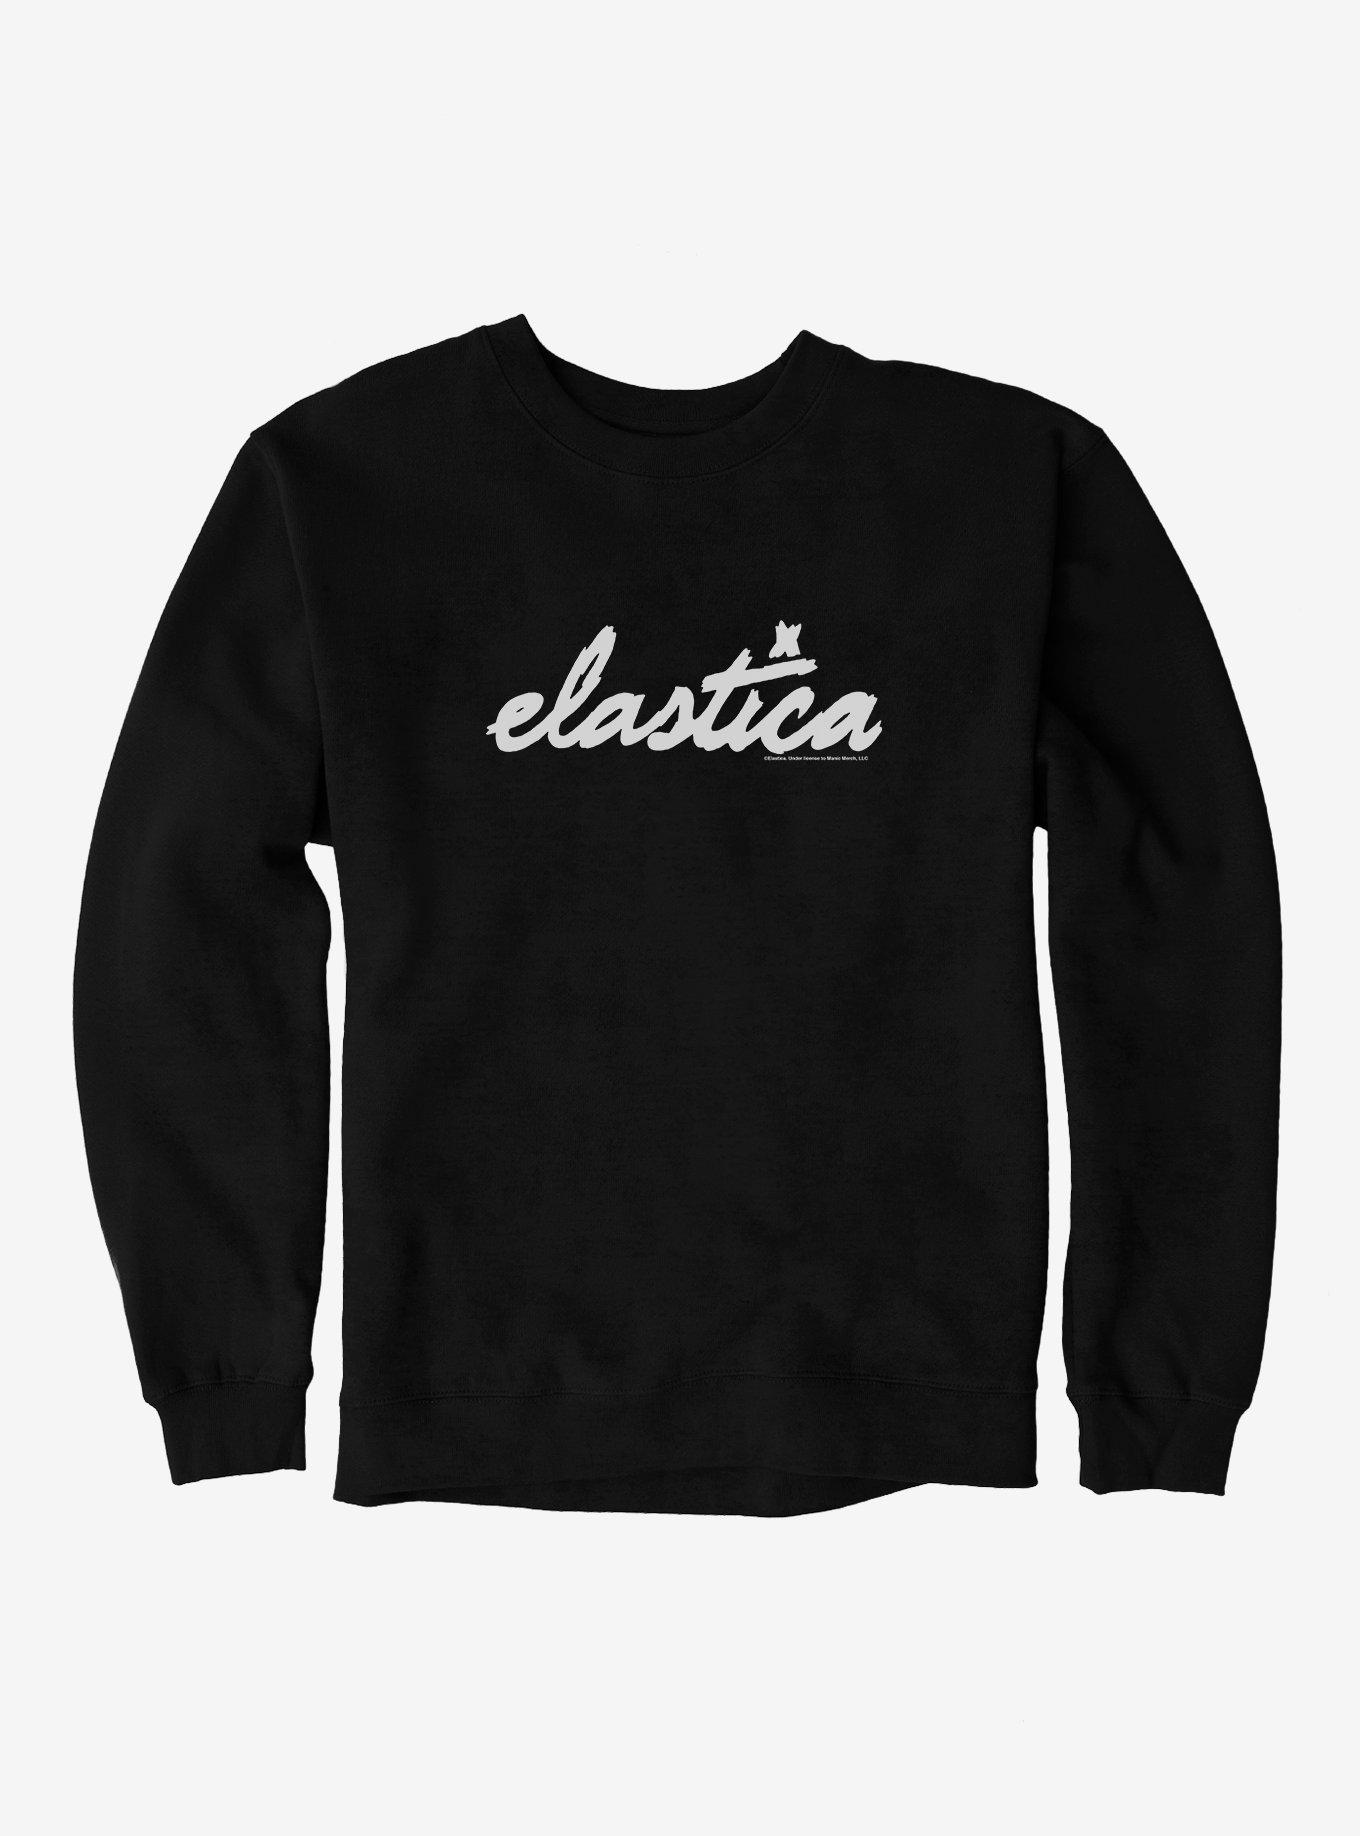 Elastica Logo Sweatshirt, BLACK, hi-res